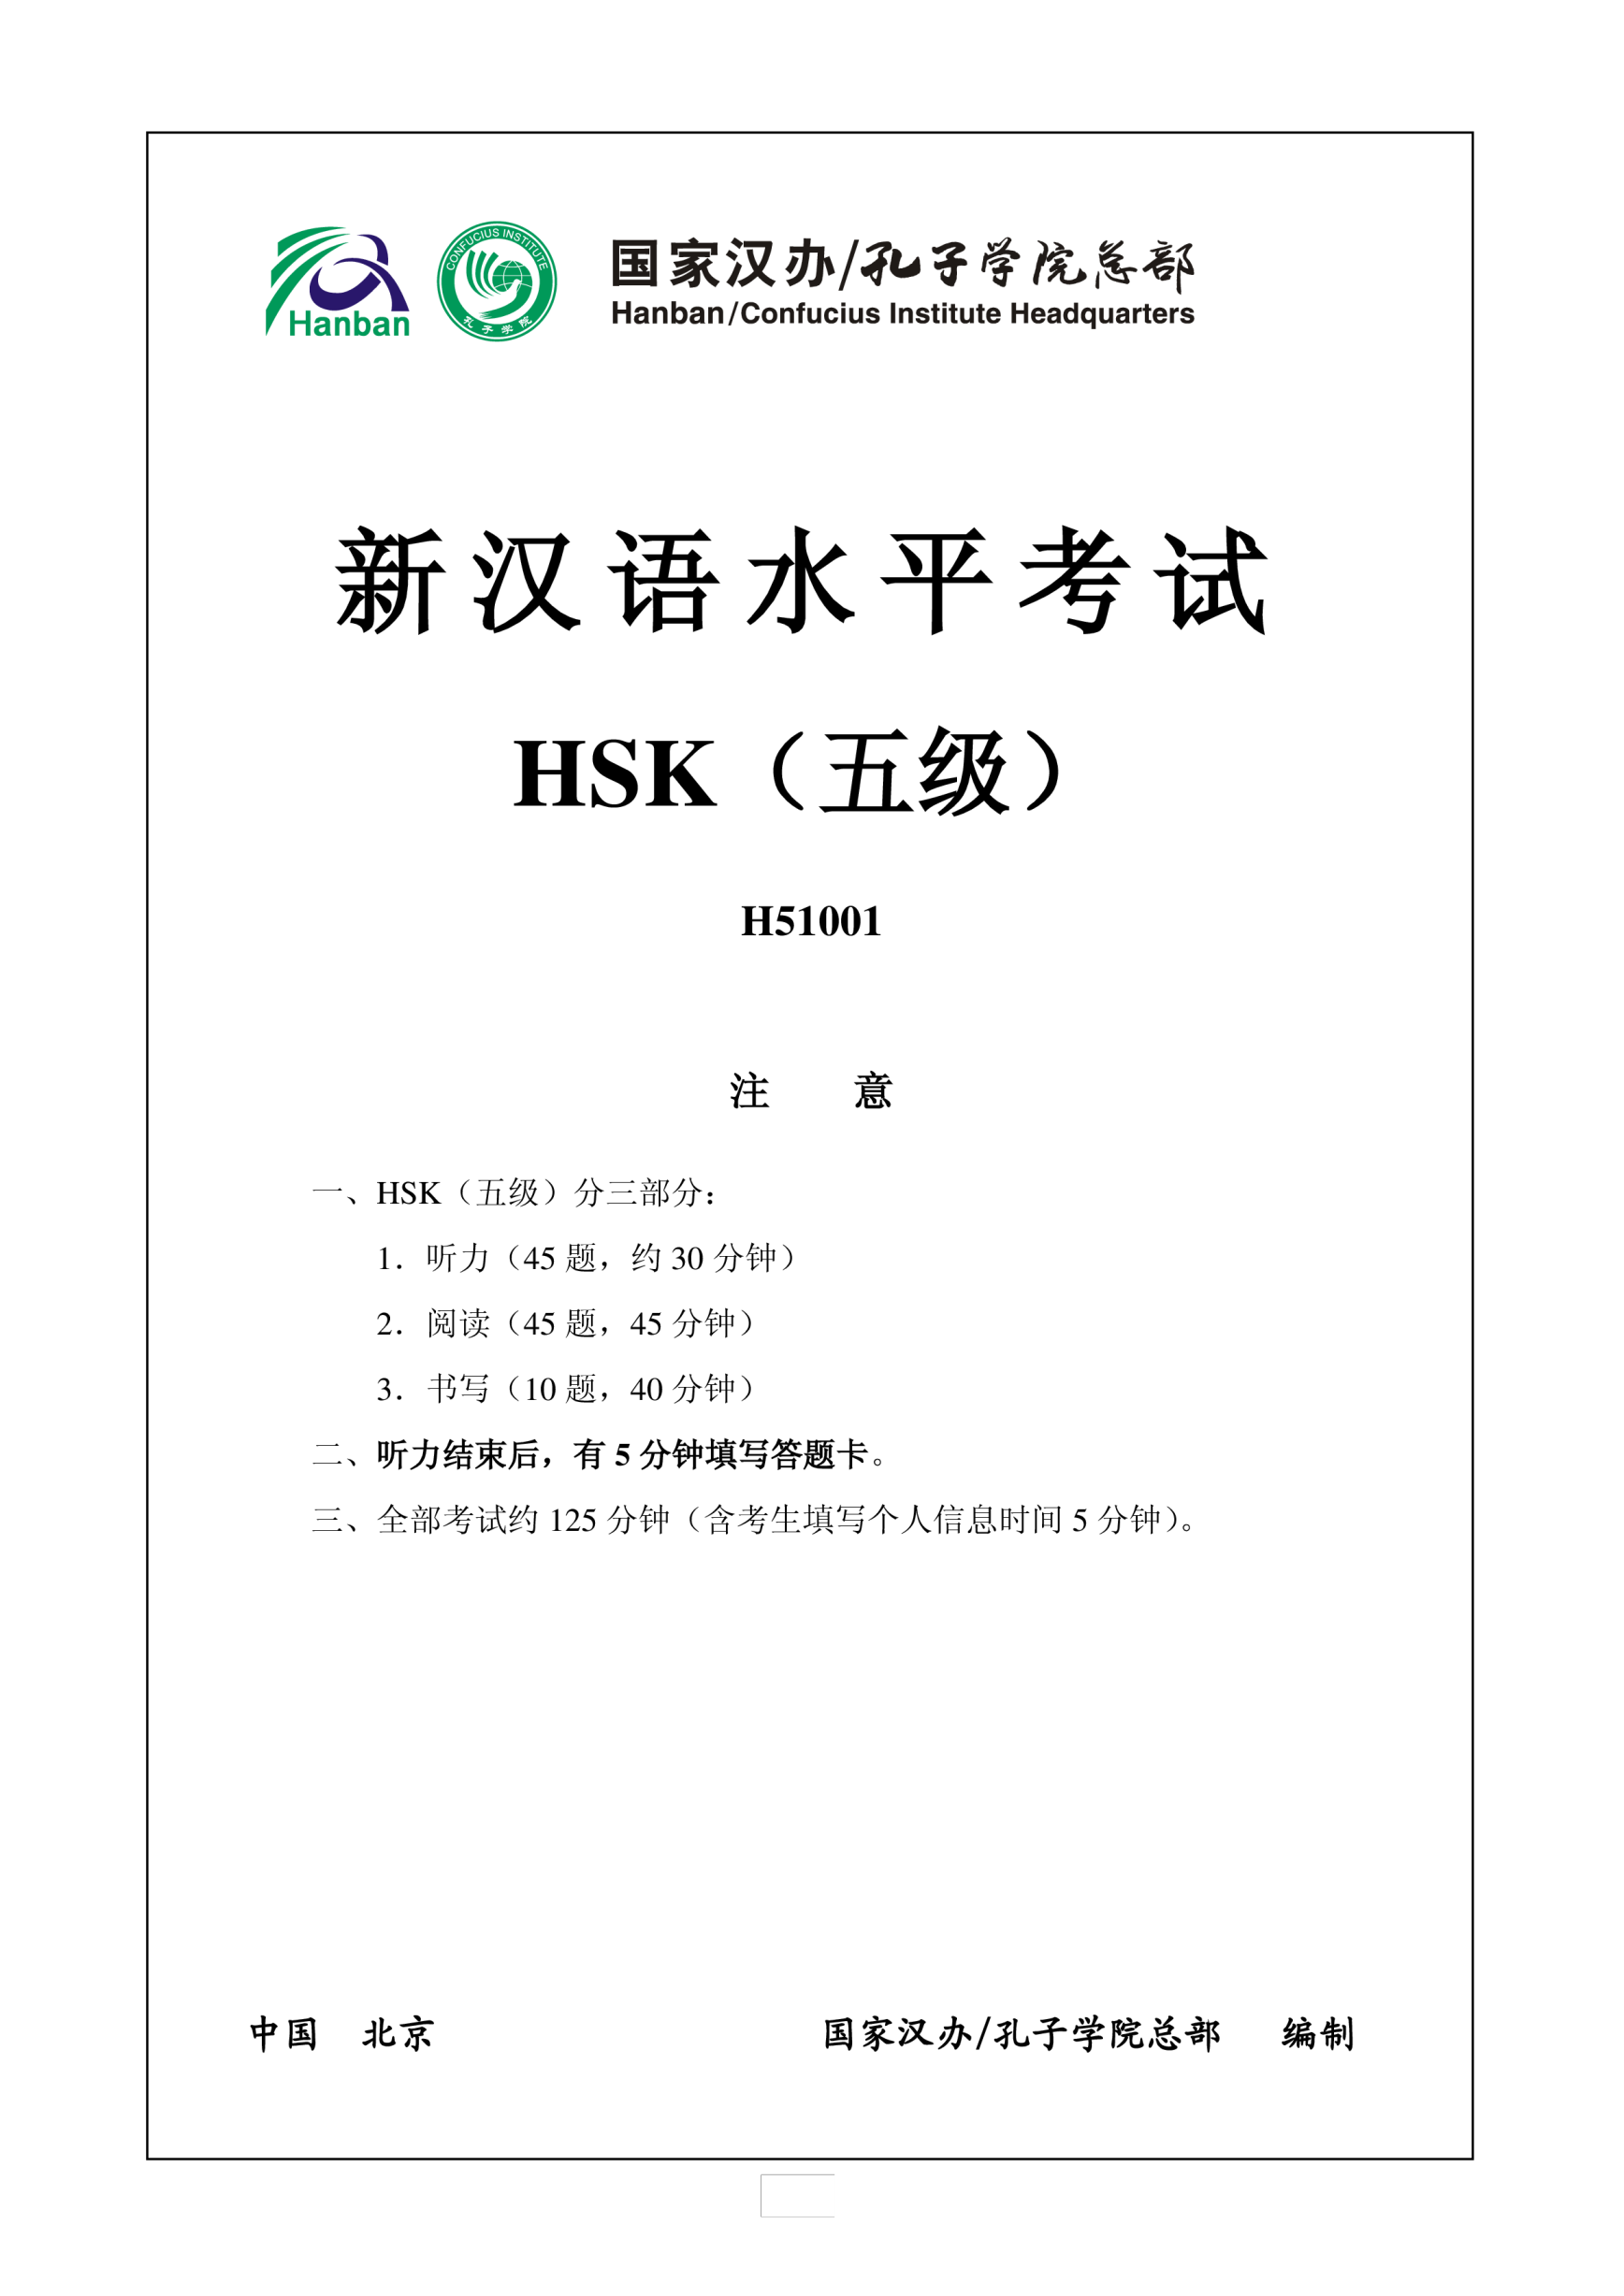 Vorschaubild der VorlageHSK 5 H51001 Chinese Exam incl Audio and Answers